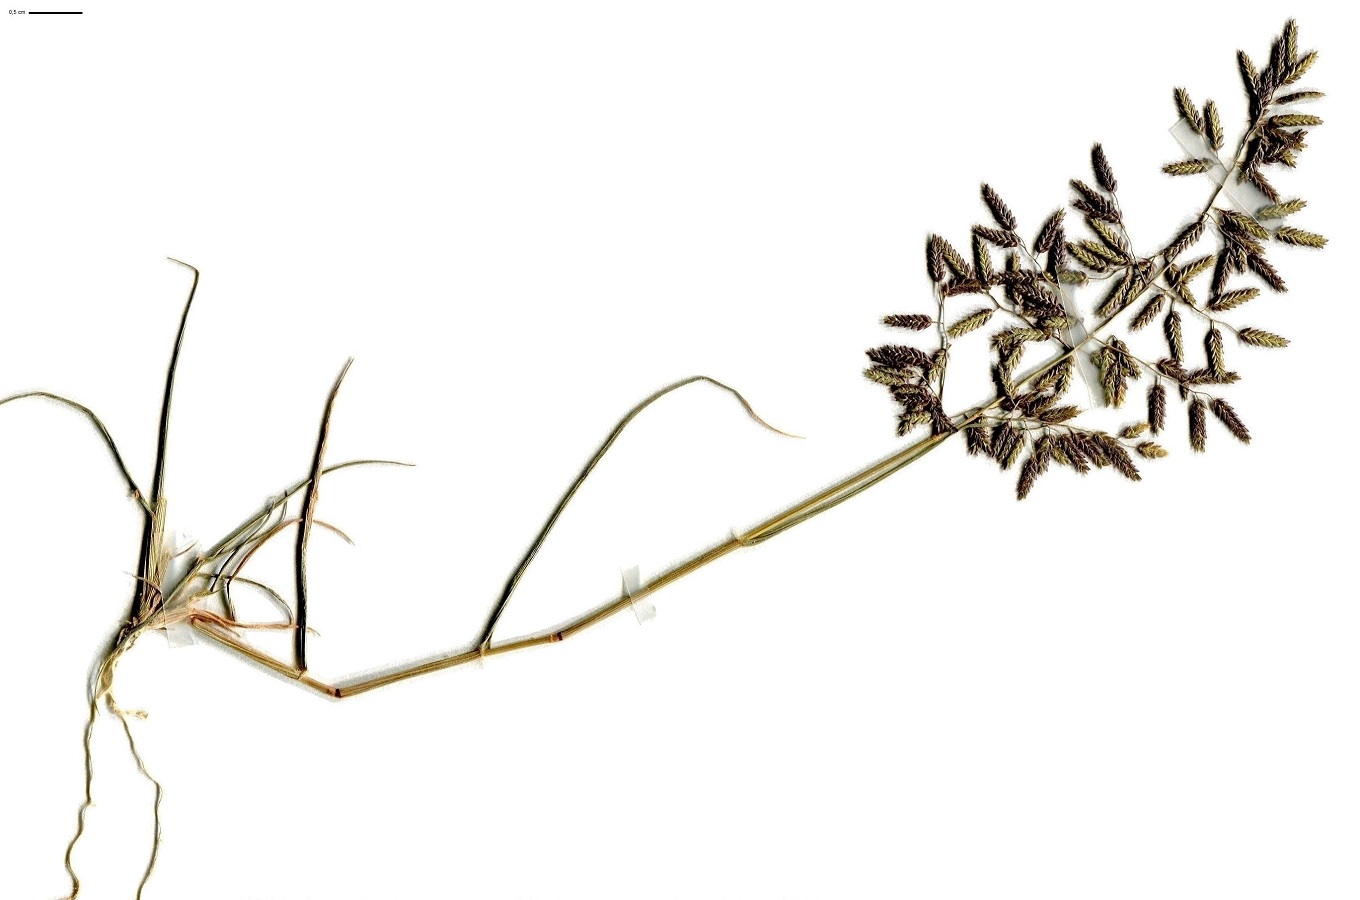 Eragrostis minor (Poaceae)